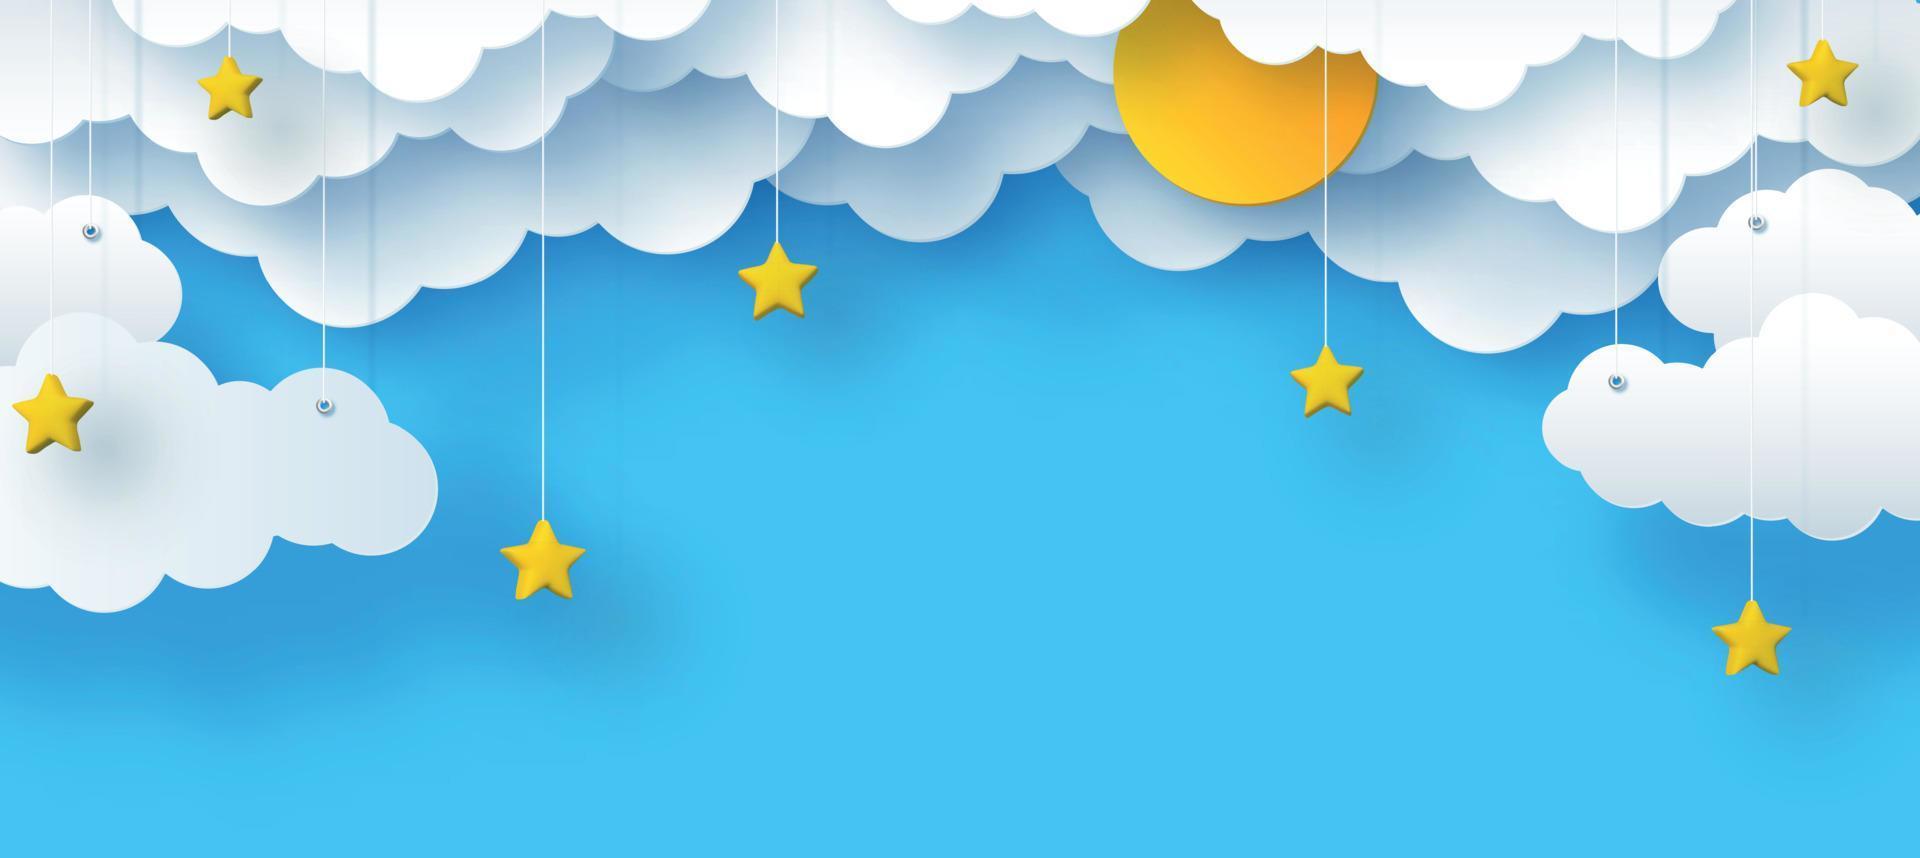 Wolken und Sterne, die Sonne auf blauem Hintergrund, Kindervektorillustration des Himmels in einem dekorativen Papierstil, 3d vektor